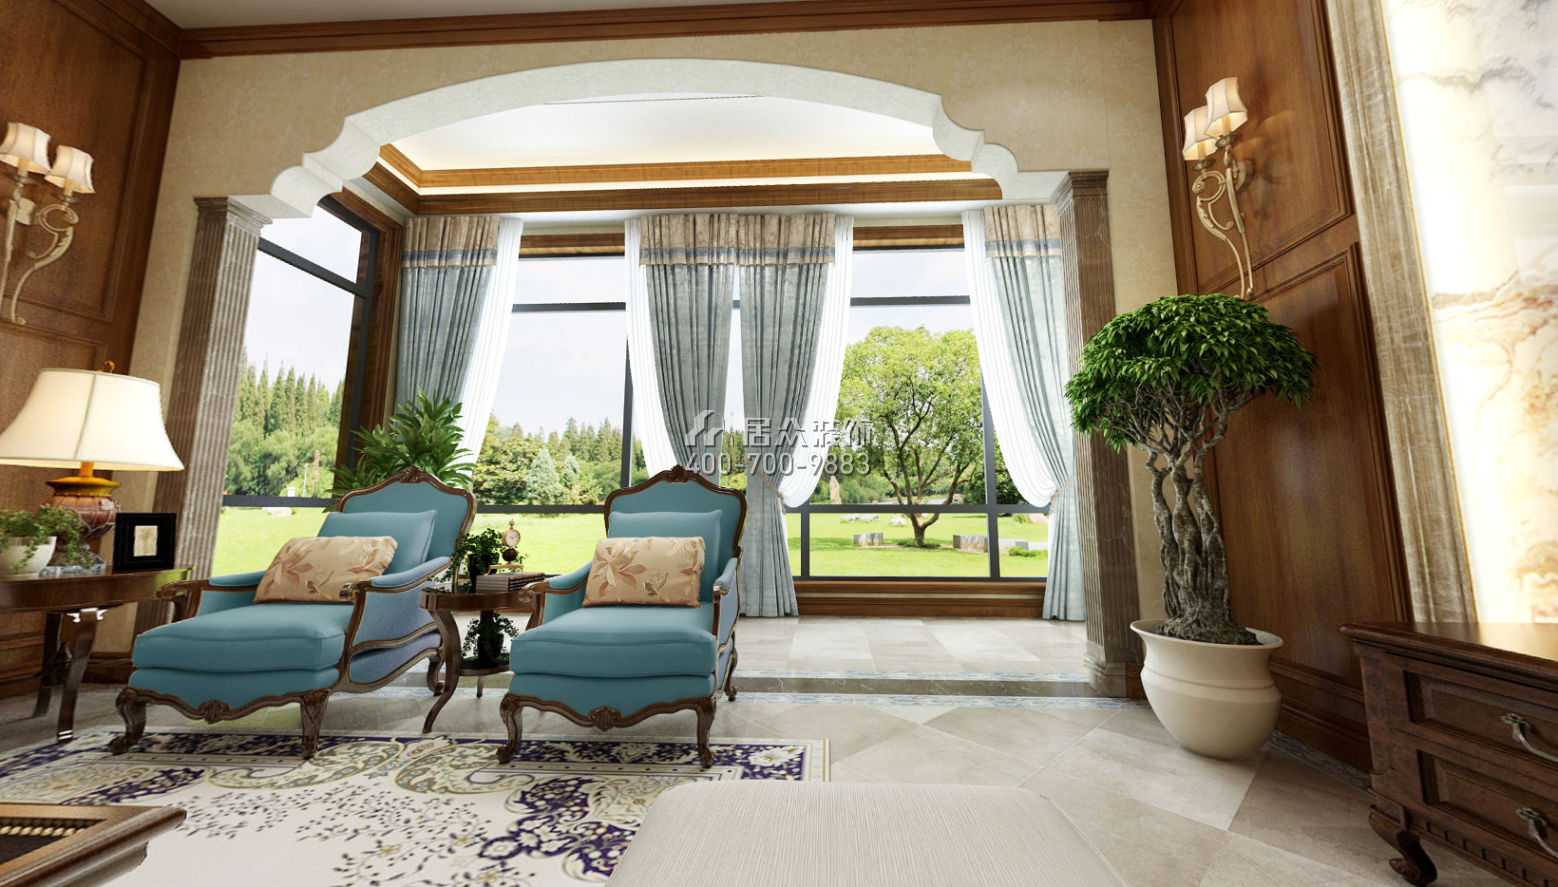 托斯卡纳320平方米美式风格别墅户型阳光房装修效果图